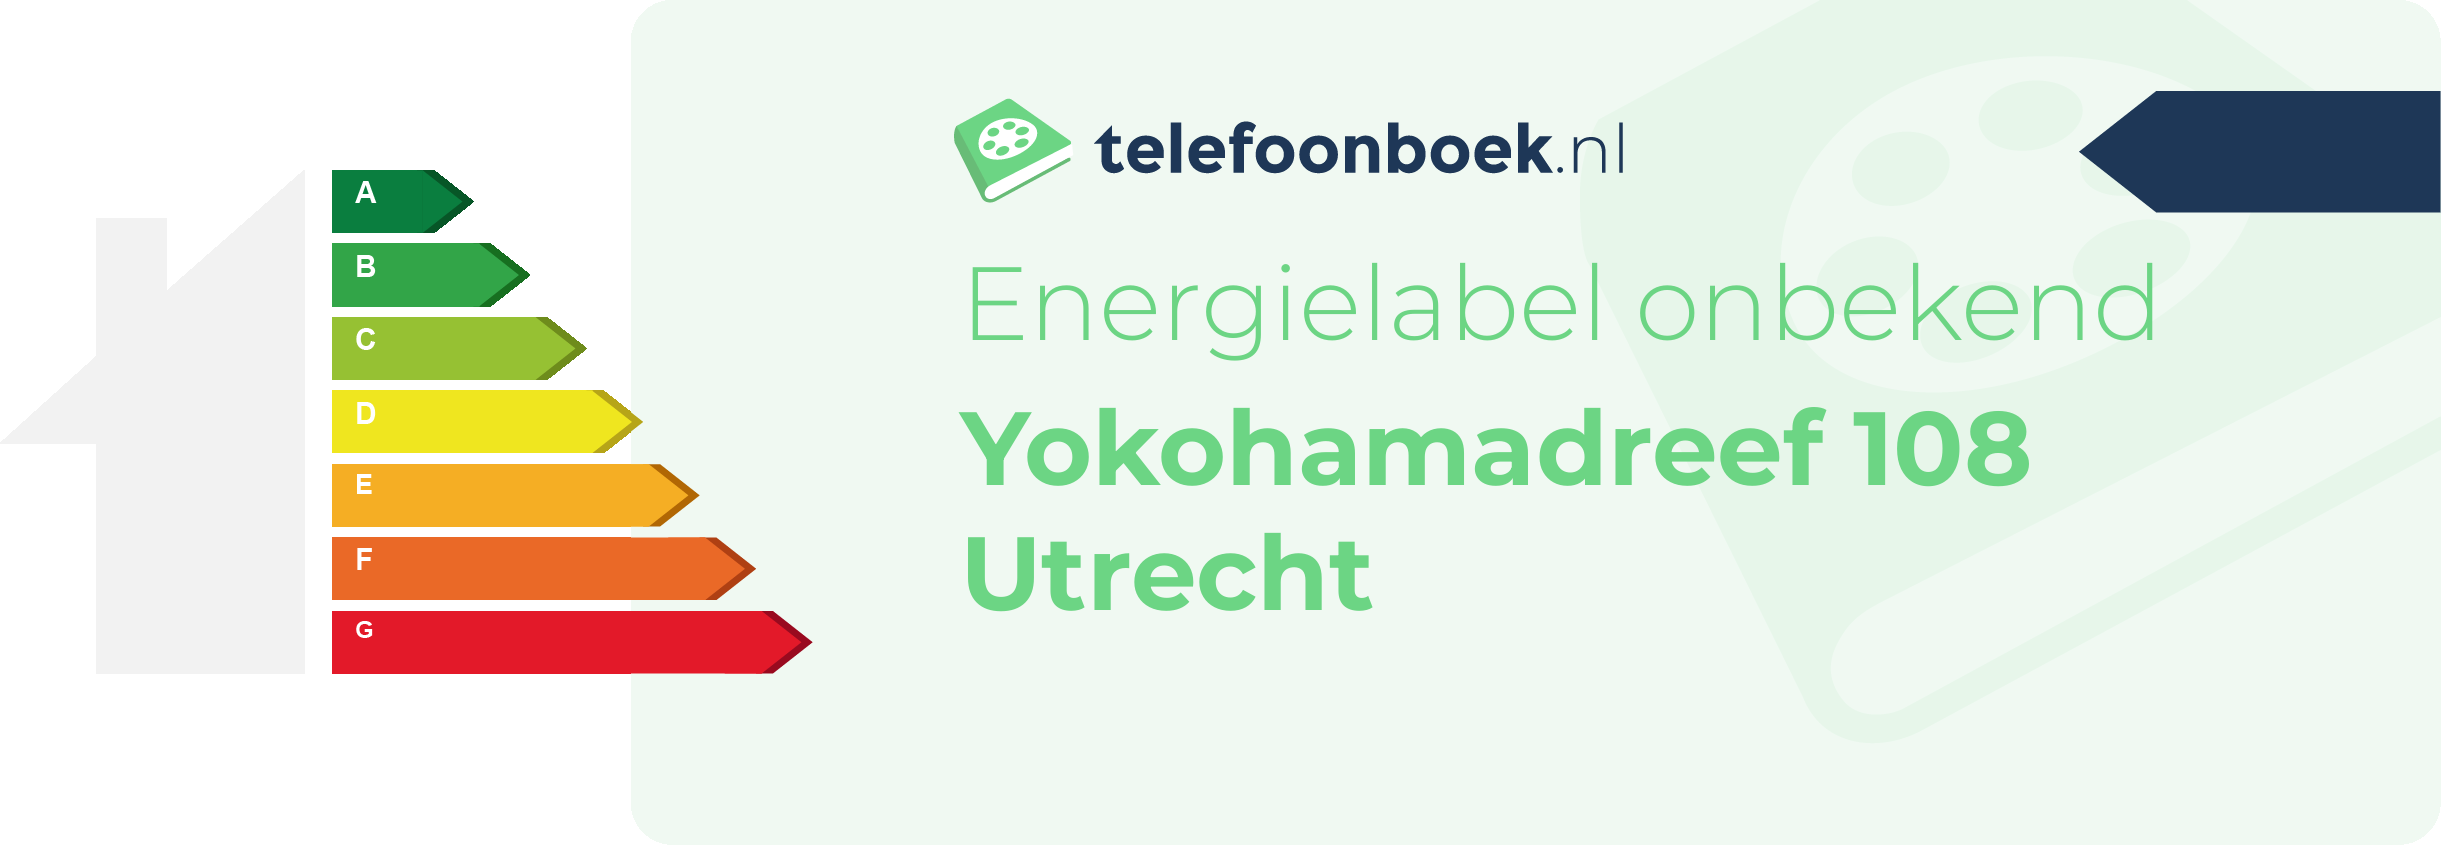 Energielabel Yokohamadreef 108 Utrecht